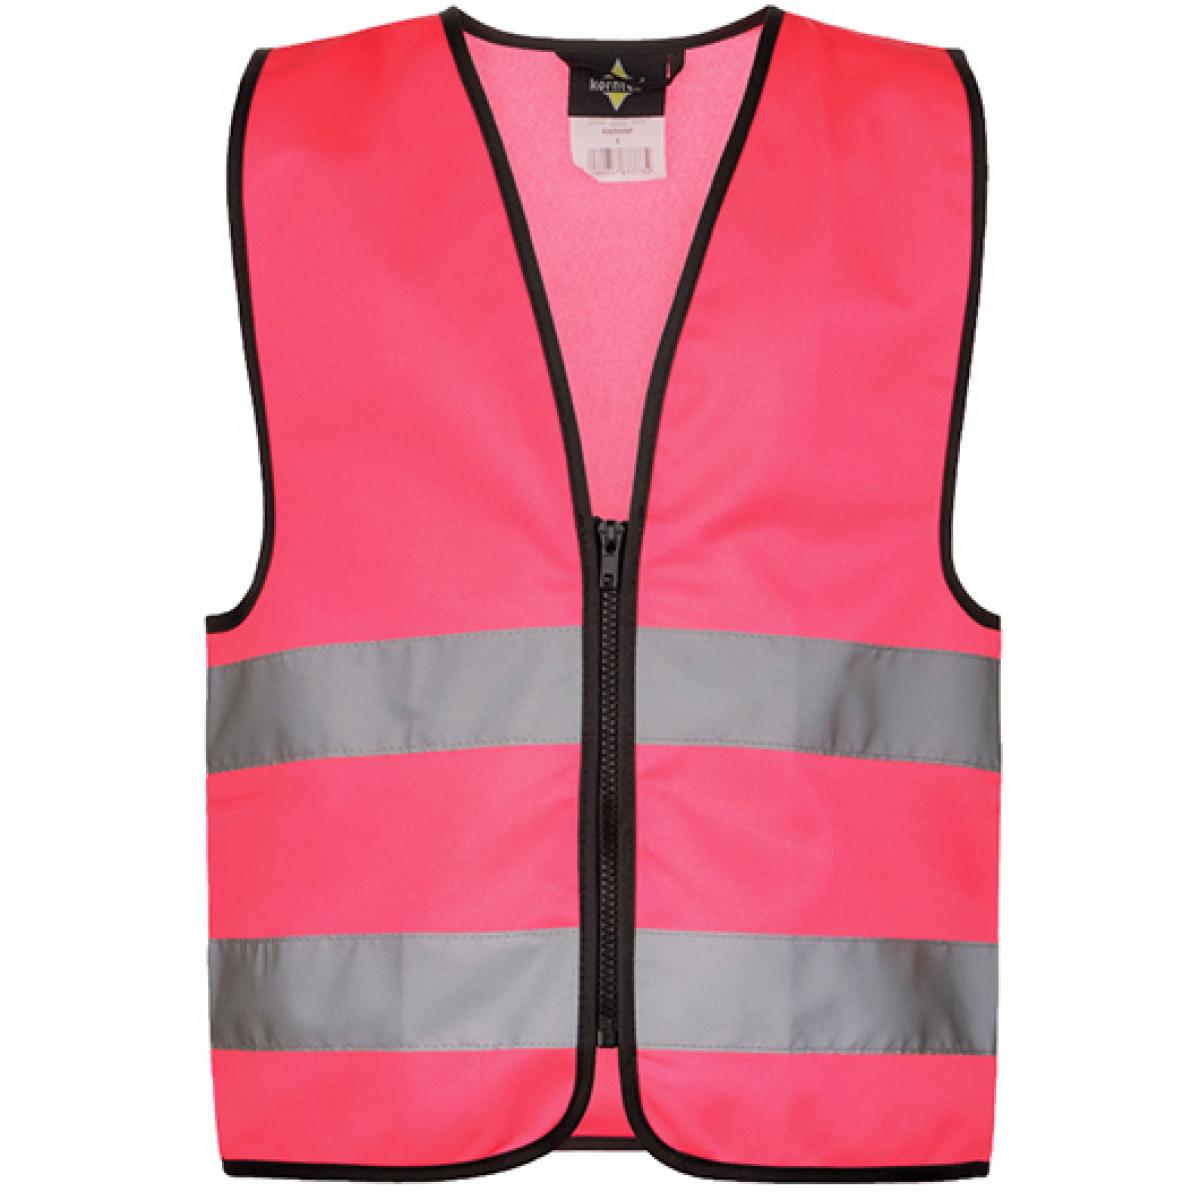 Hersteller: Korntex Herstellernummer: KWRX Artikelbezeichnung: Kinder Safety Vest for Kids with Zipper EN1150 Farbe: Neon Pink